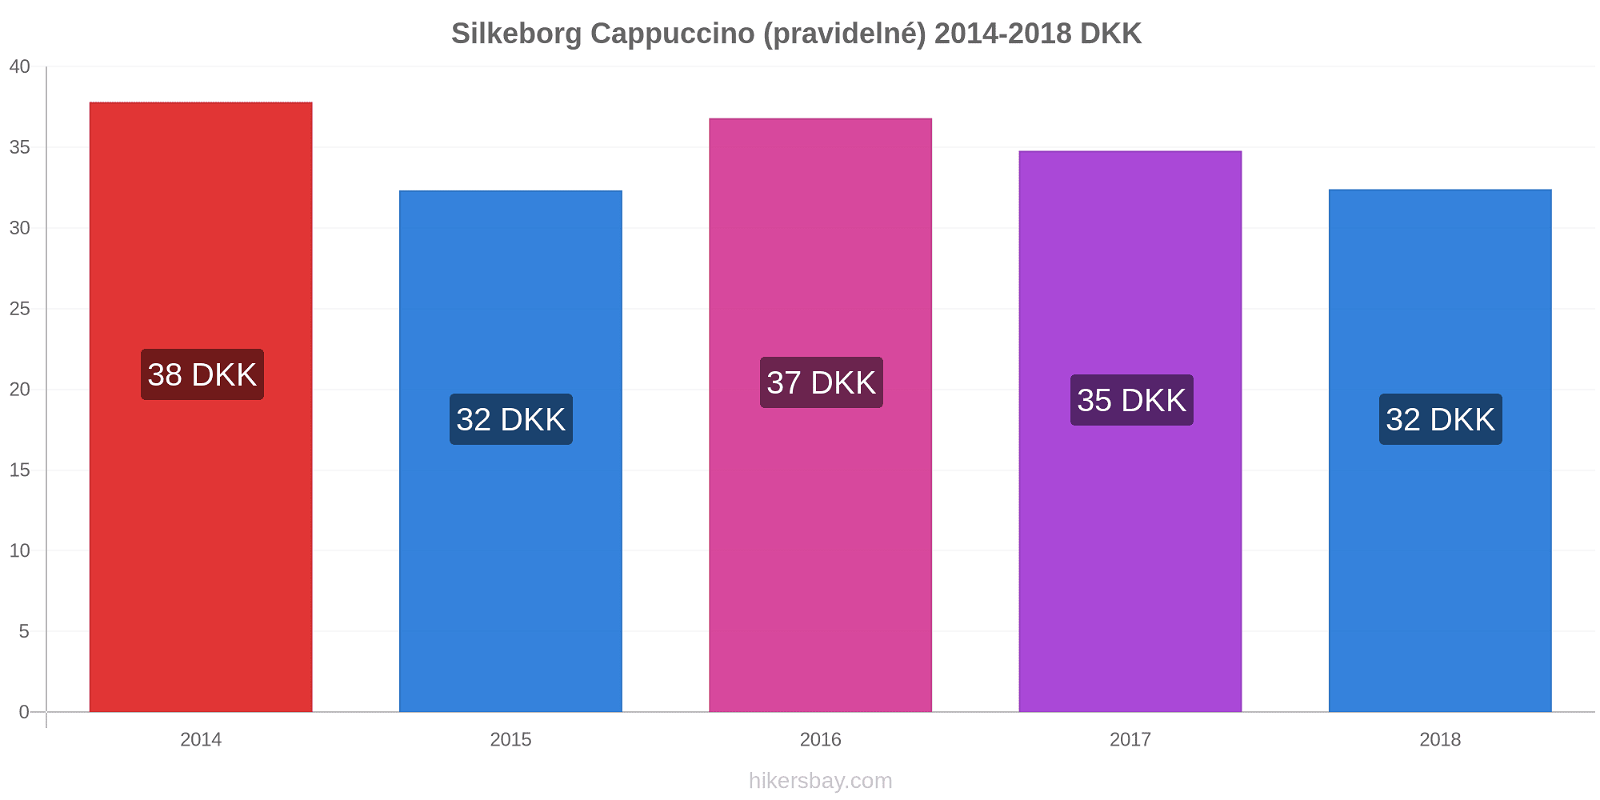 Silkeborg změny cen Cappuccino (pravidelné) hikersbay.com